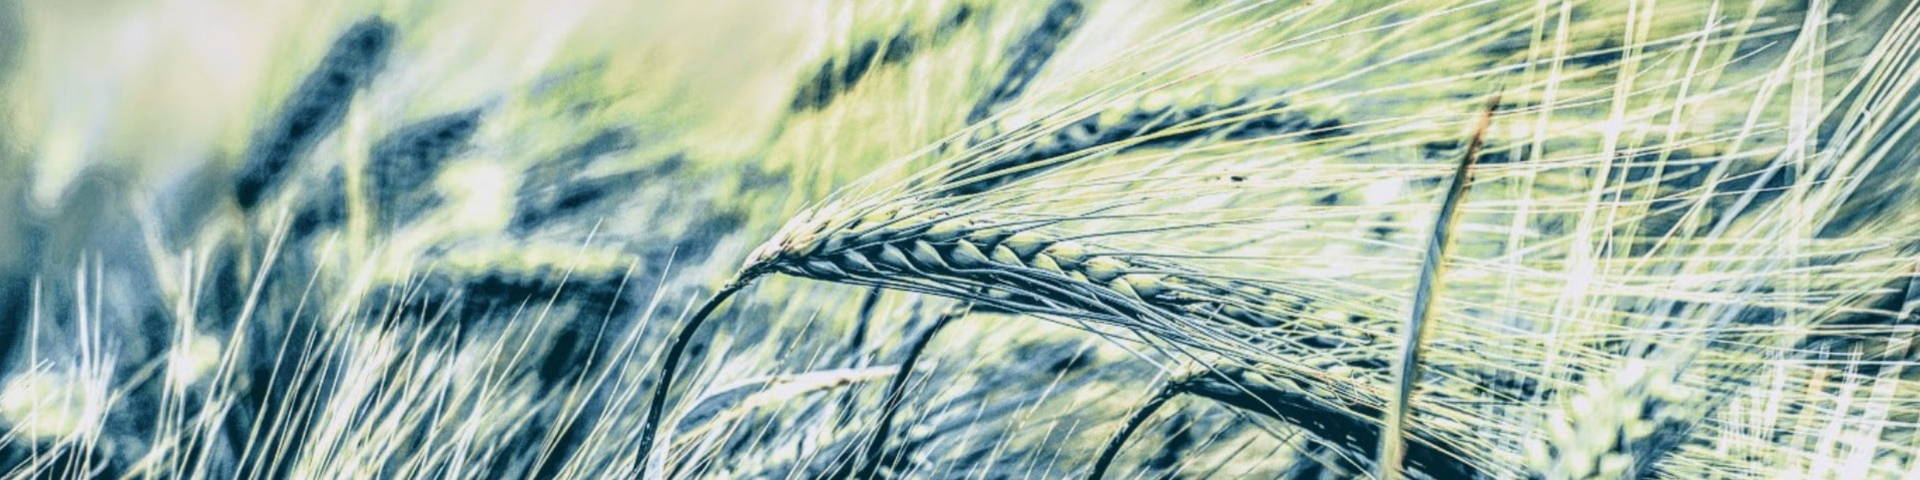 grain in field